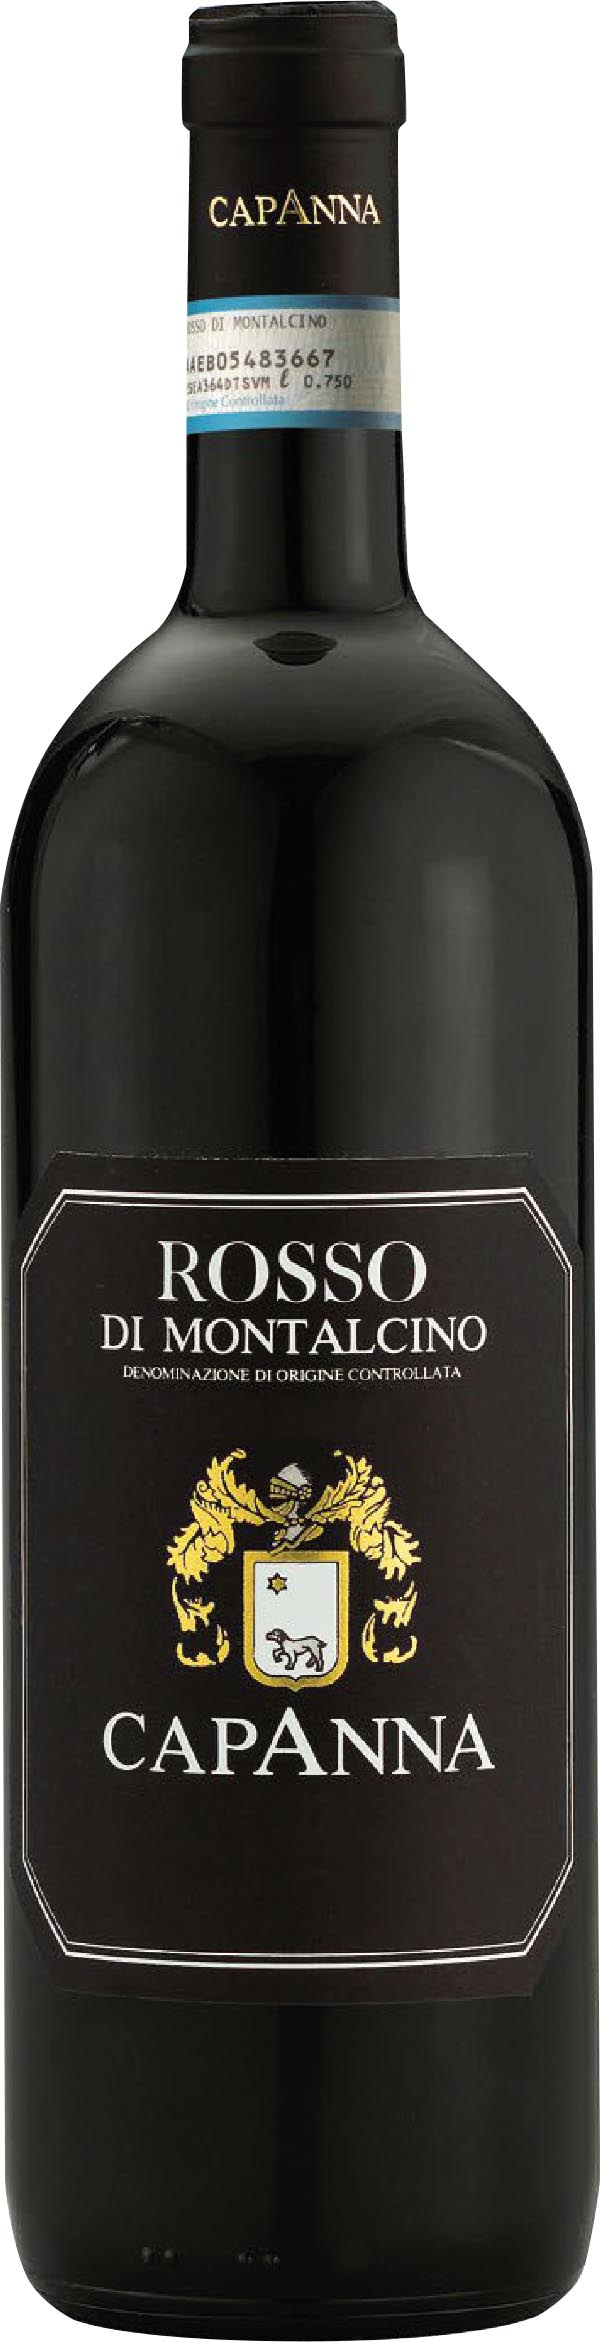 Capanna Rosso di Montalcino 2019 0.75 l Toskana Rotwein